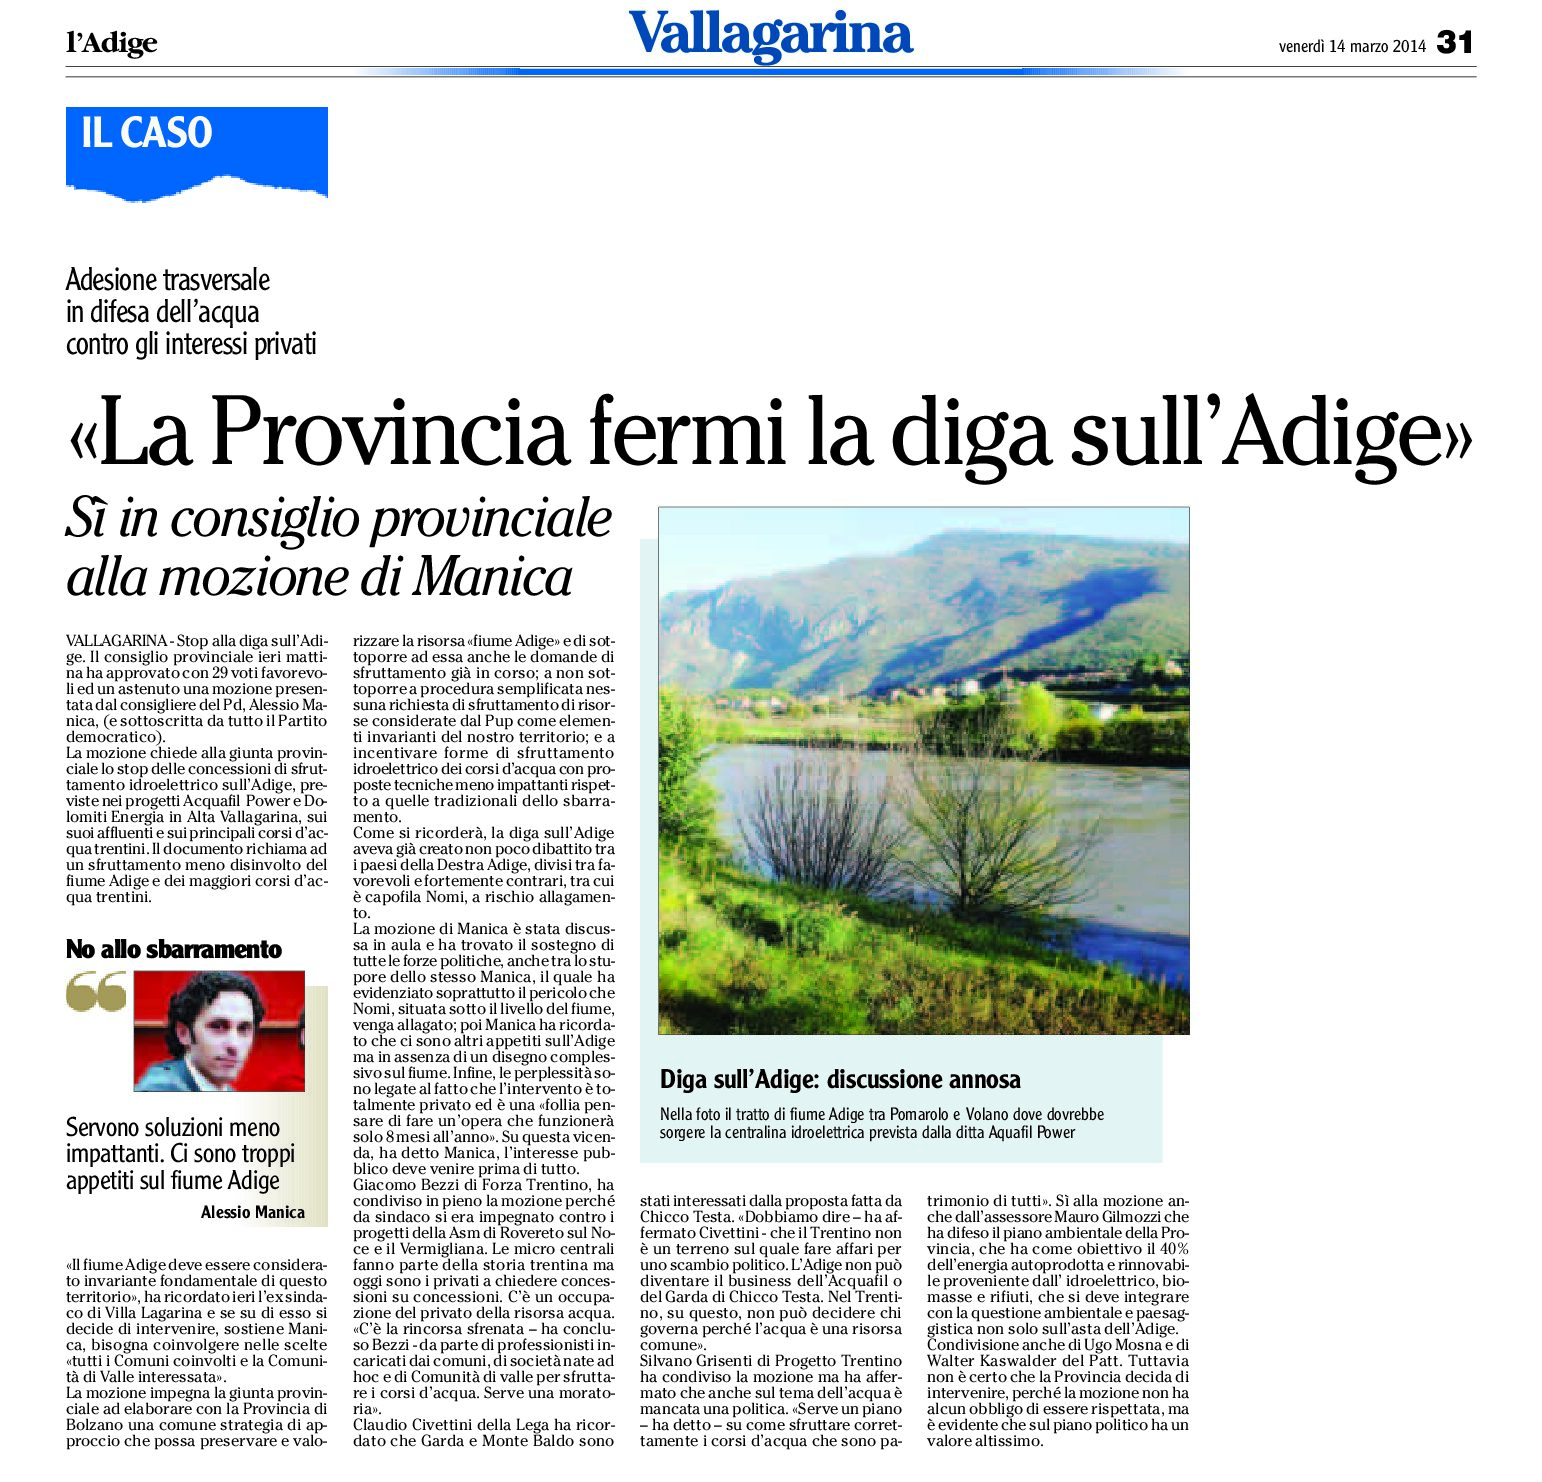 La Provincia fermi la diga sull’Adige